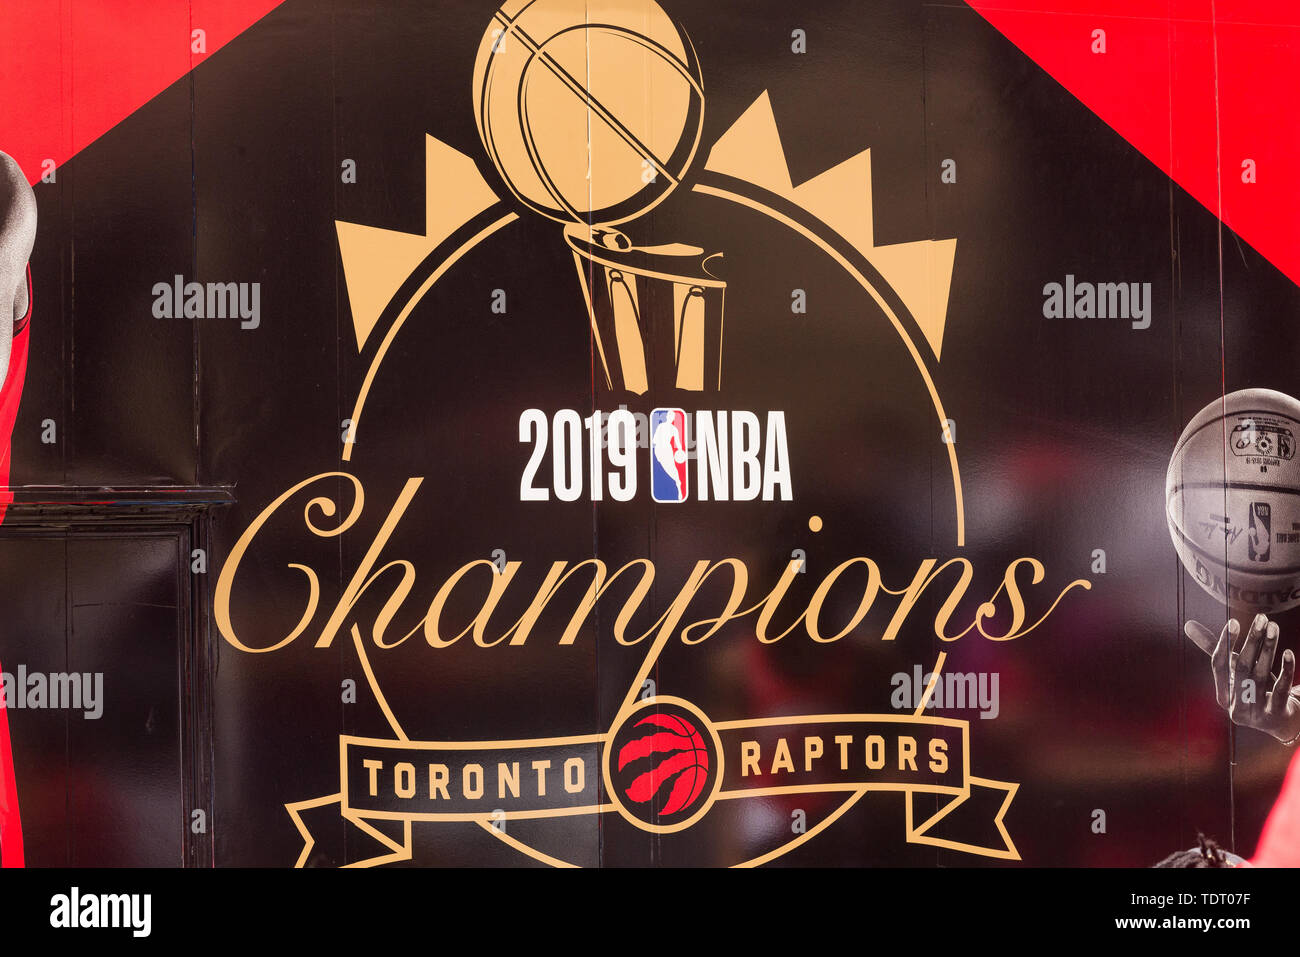 Golden St Warriors: Phantom “Back to Back” NBA Champs – SportsLogos.Net News